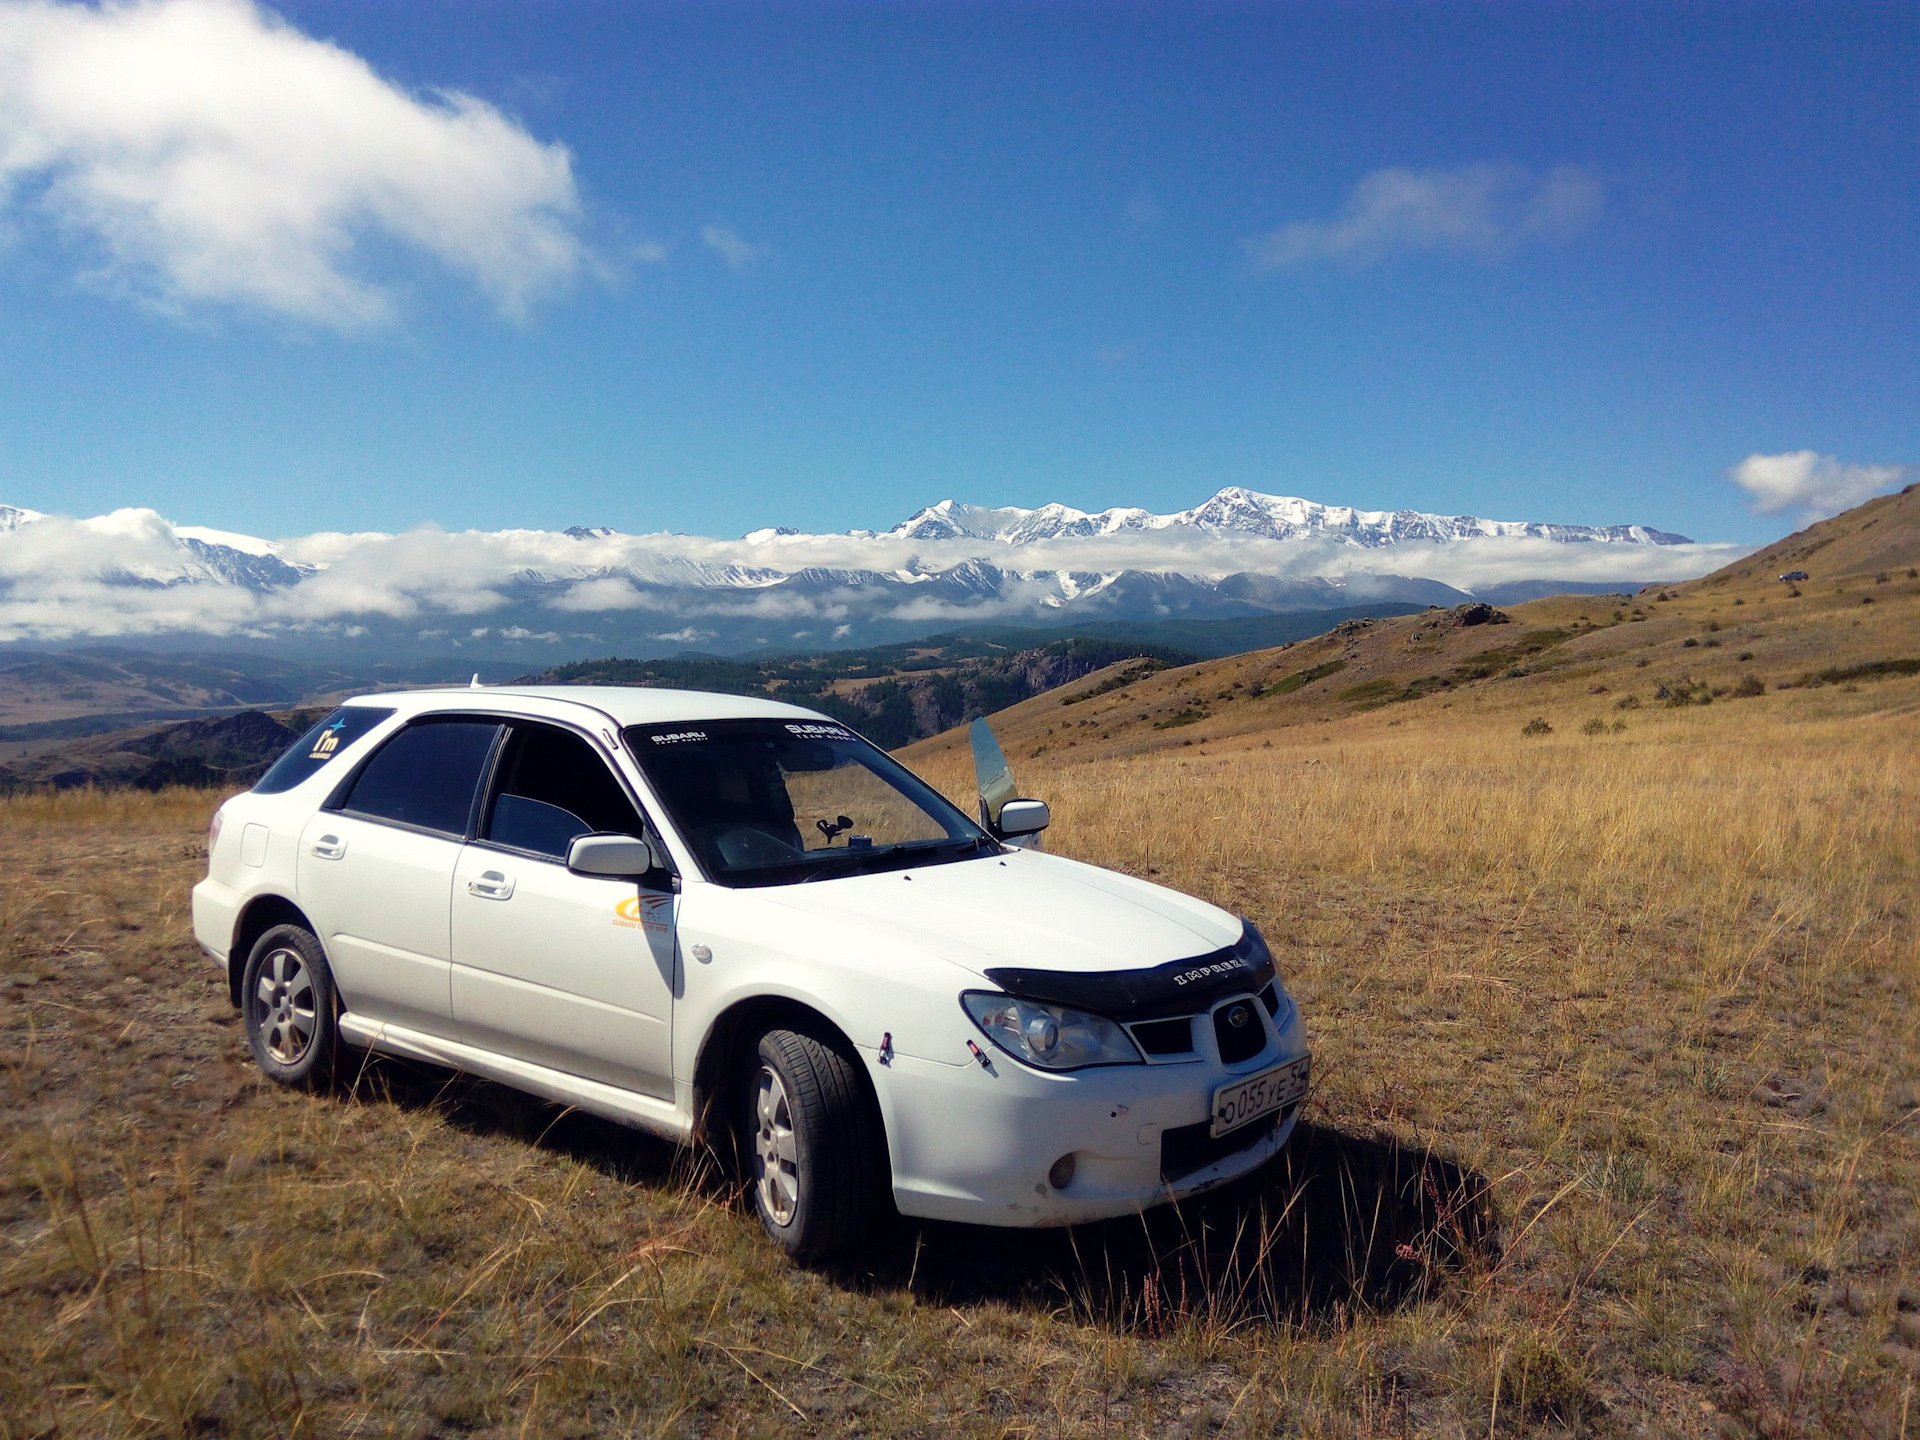 Объявления автомобили алтайский край. На Субару в Алтай. Алтай на машине. Субару в горах. В Дагестан на Субару.